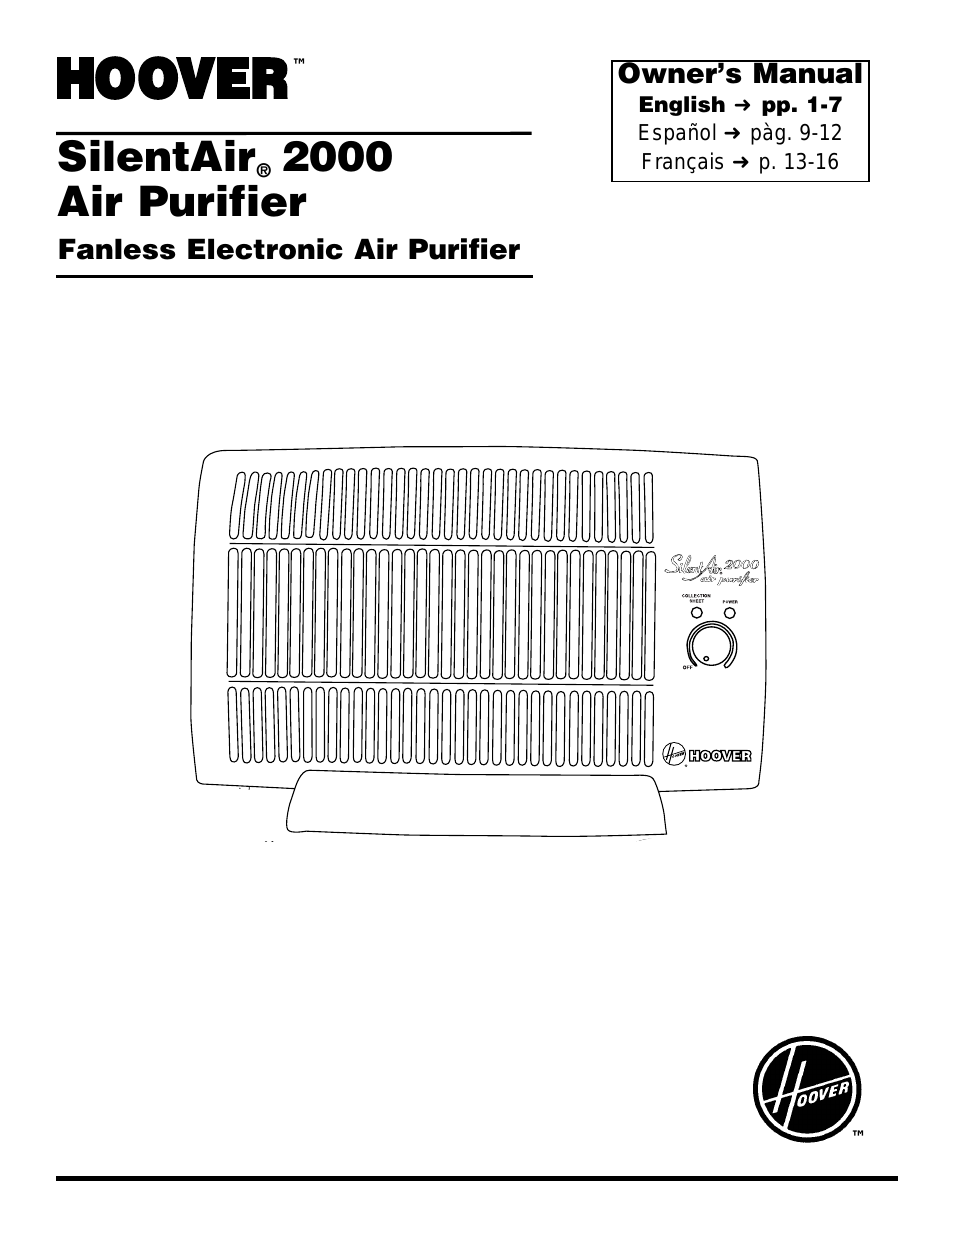 SilentAir 2000